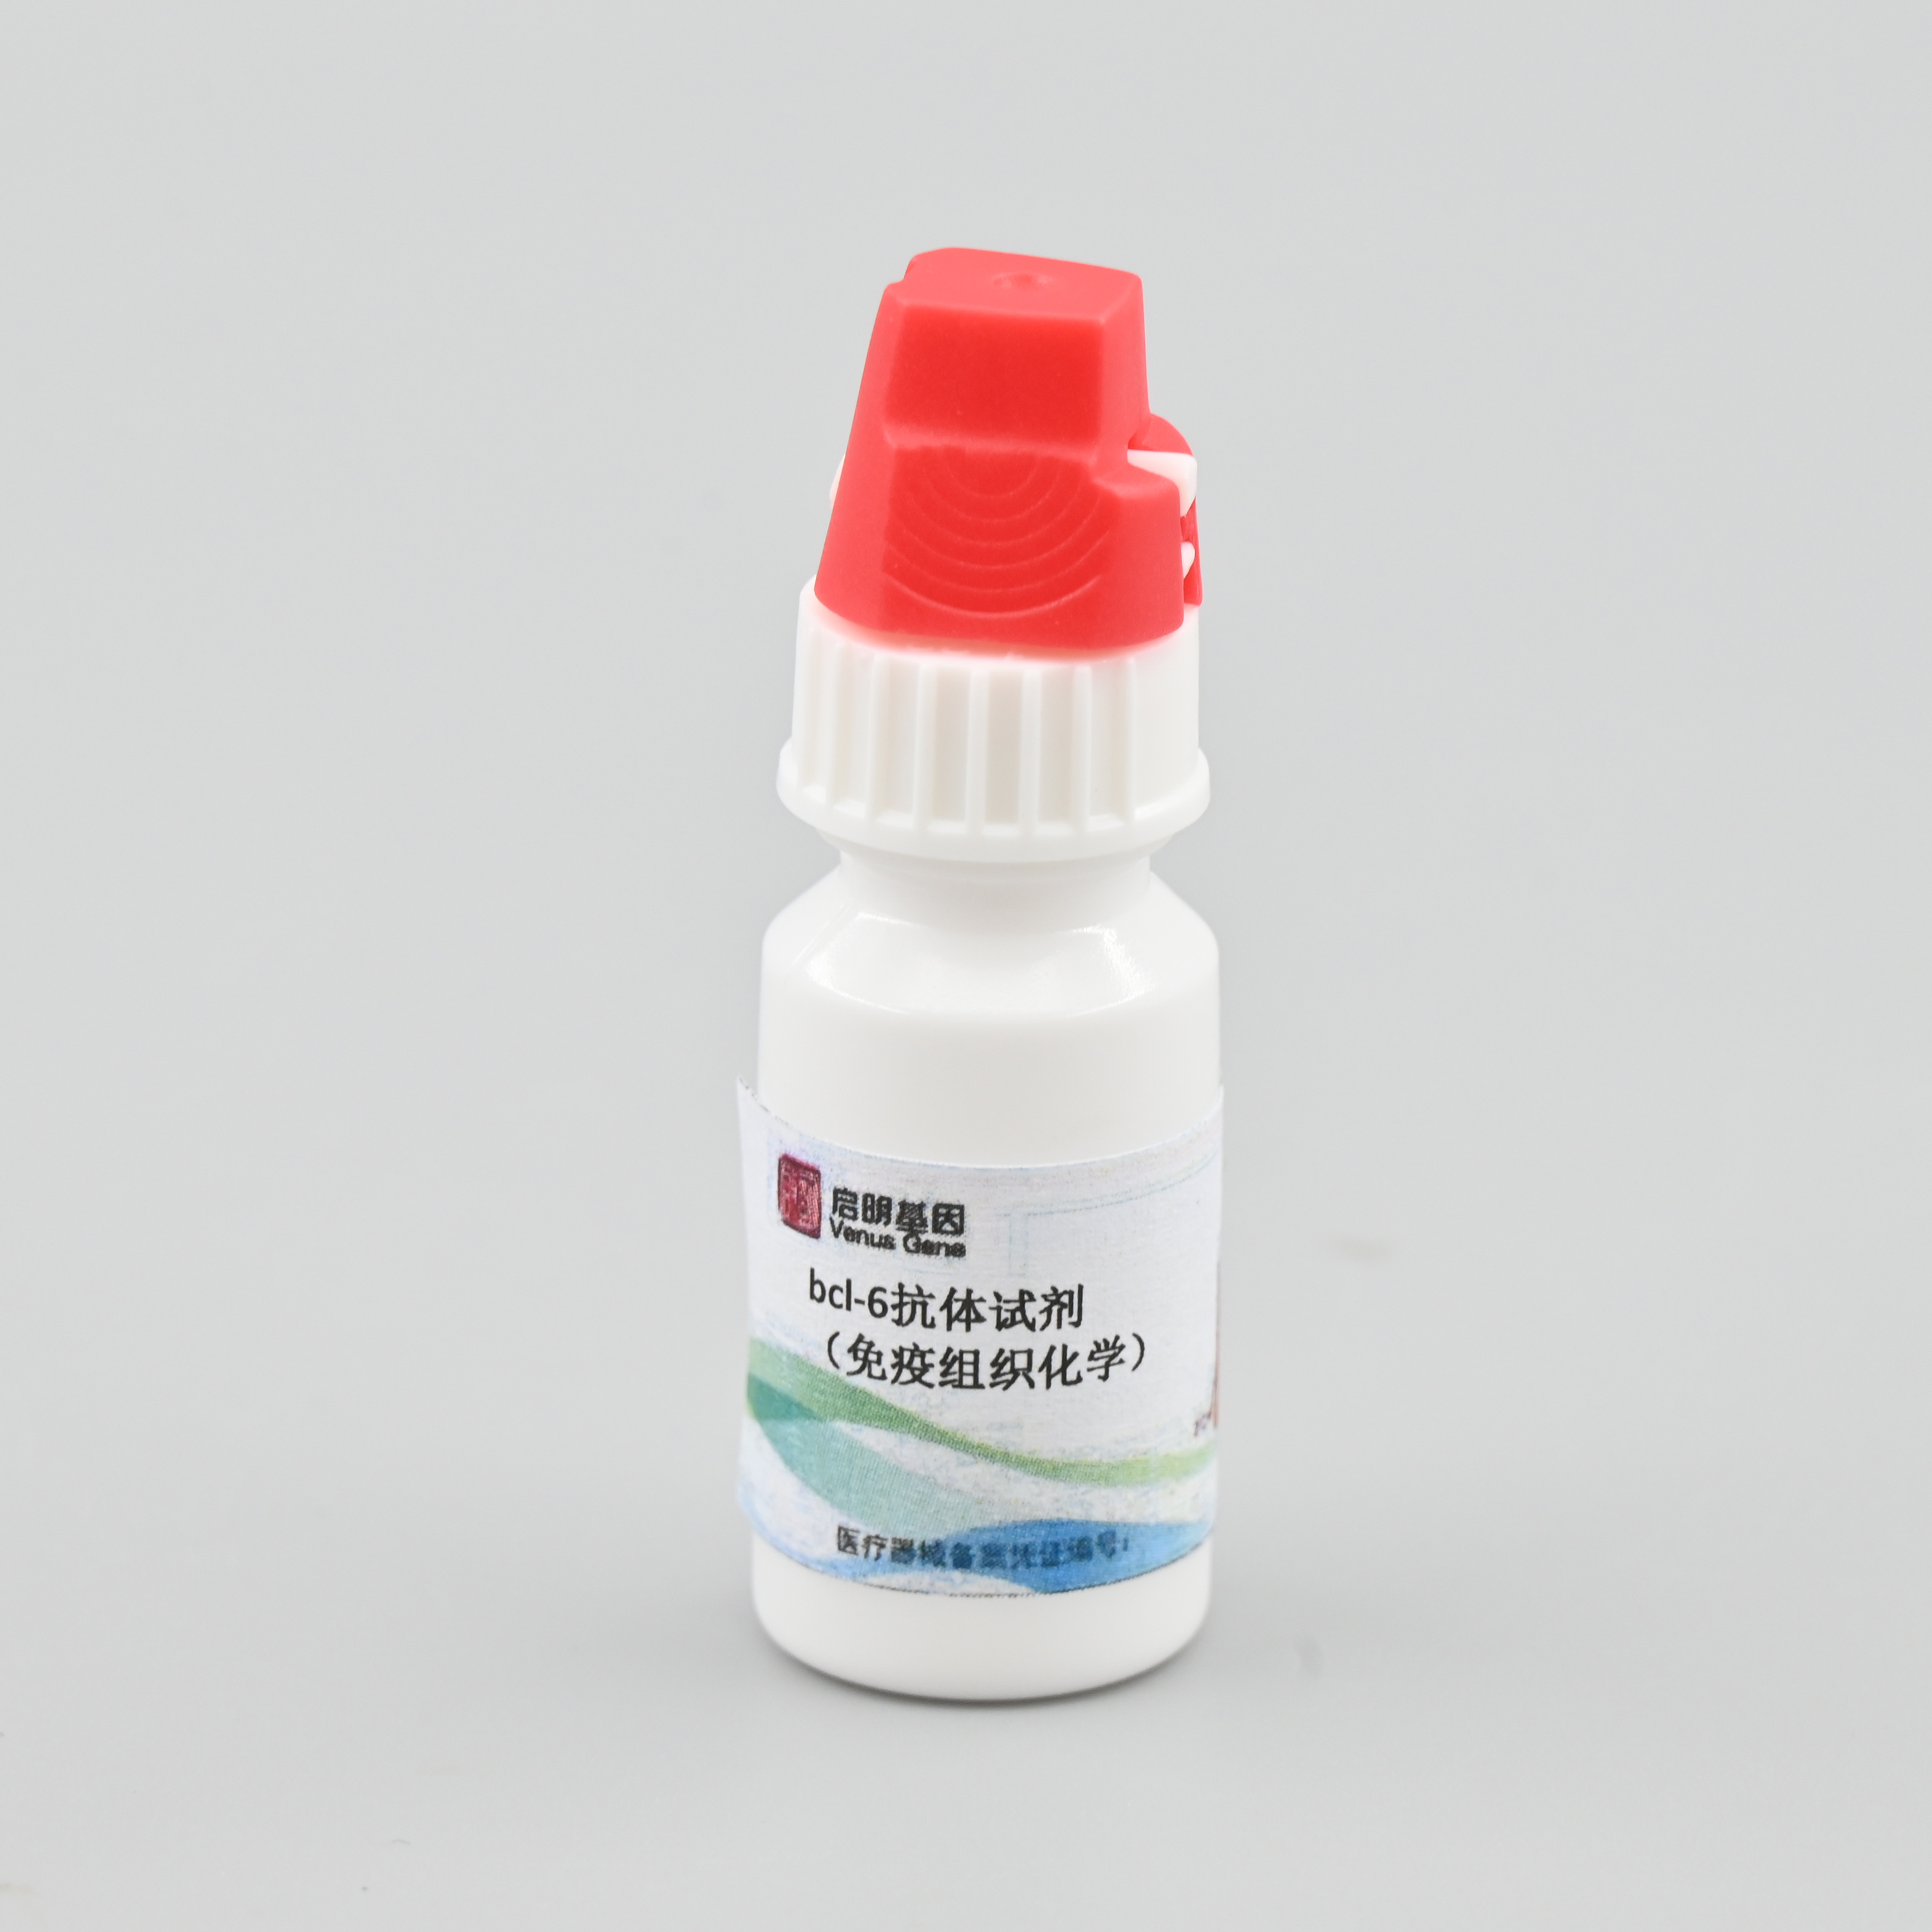 【启明基因】bcl-6抗体试剂/检测试剂盒（免疫组织化学）